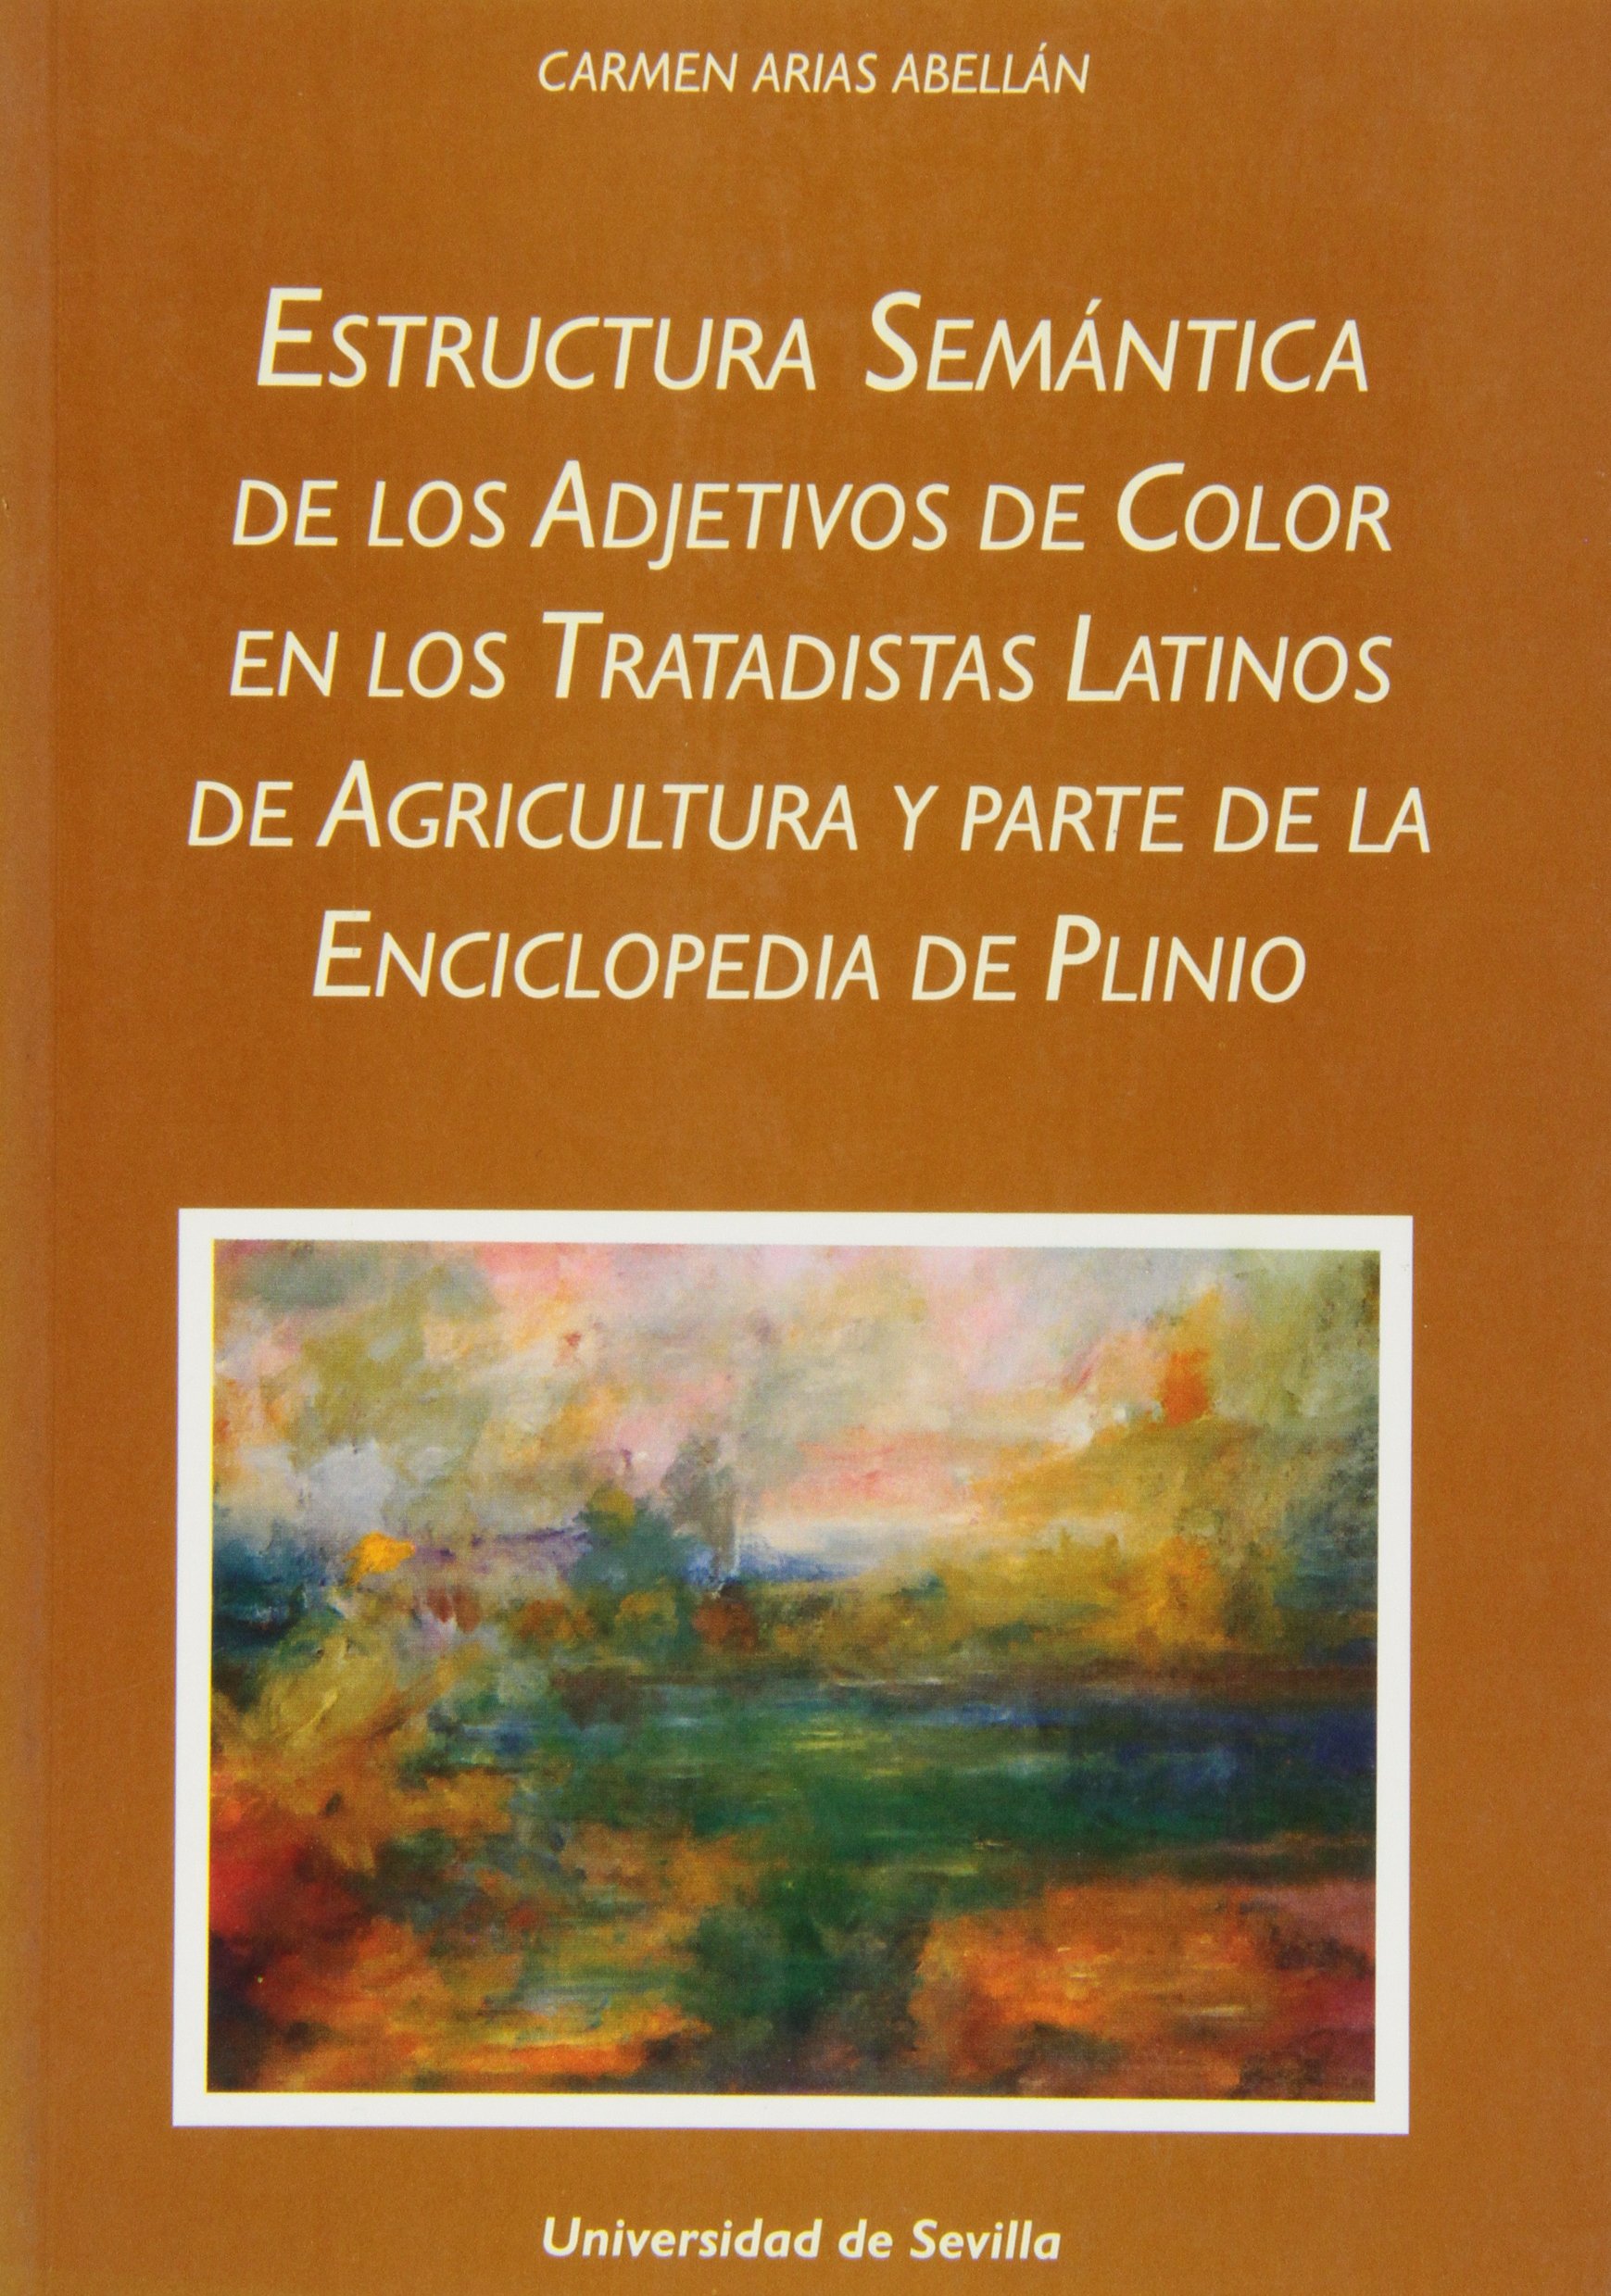 Estructura semantica de los adjetivos de color en los tratadistas latinos de agricultura y parte de la Enciclopedia de Plinio